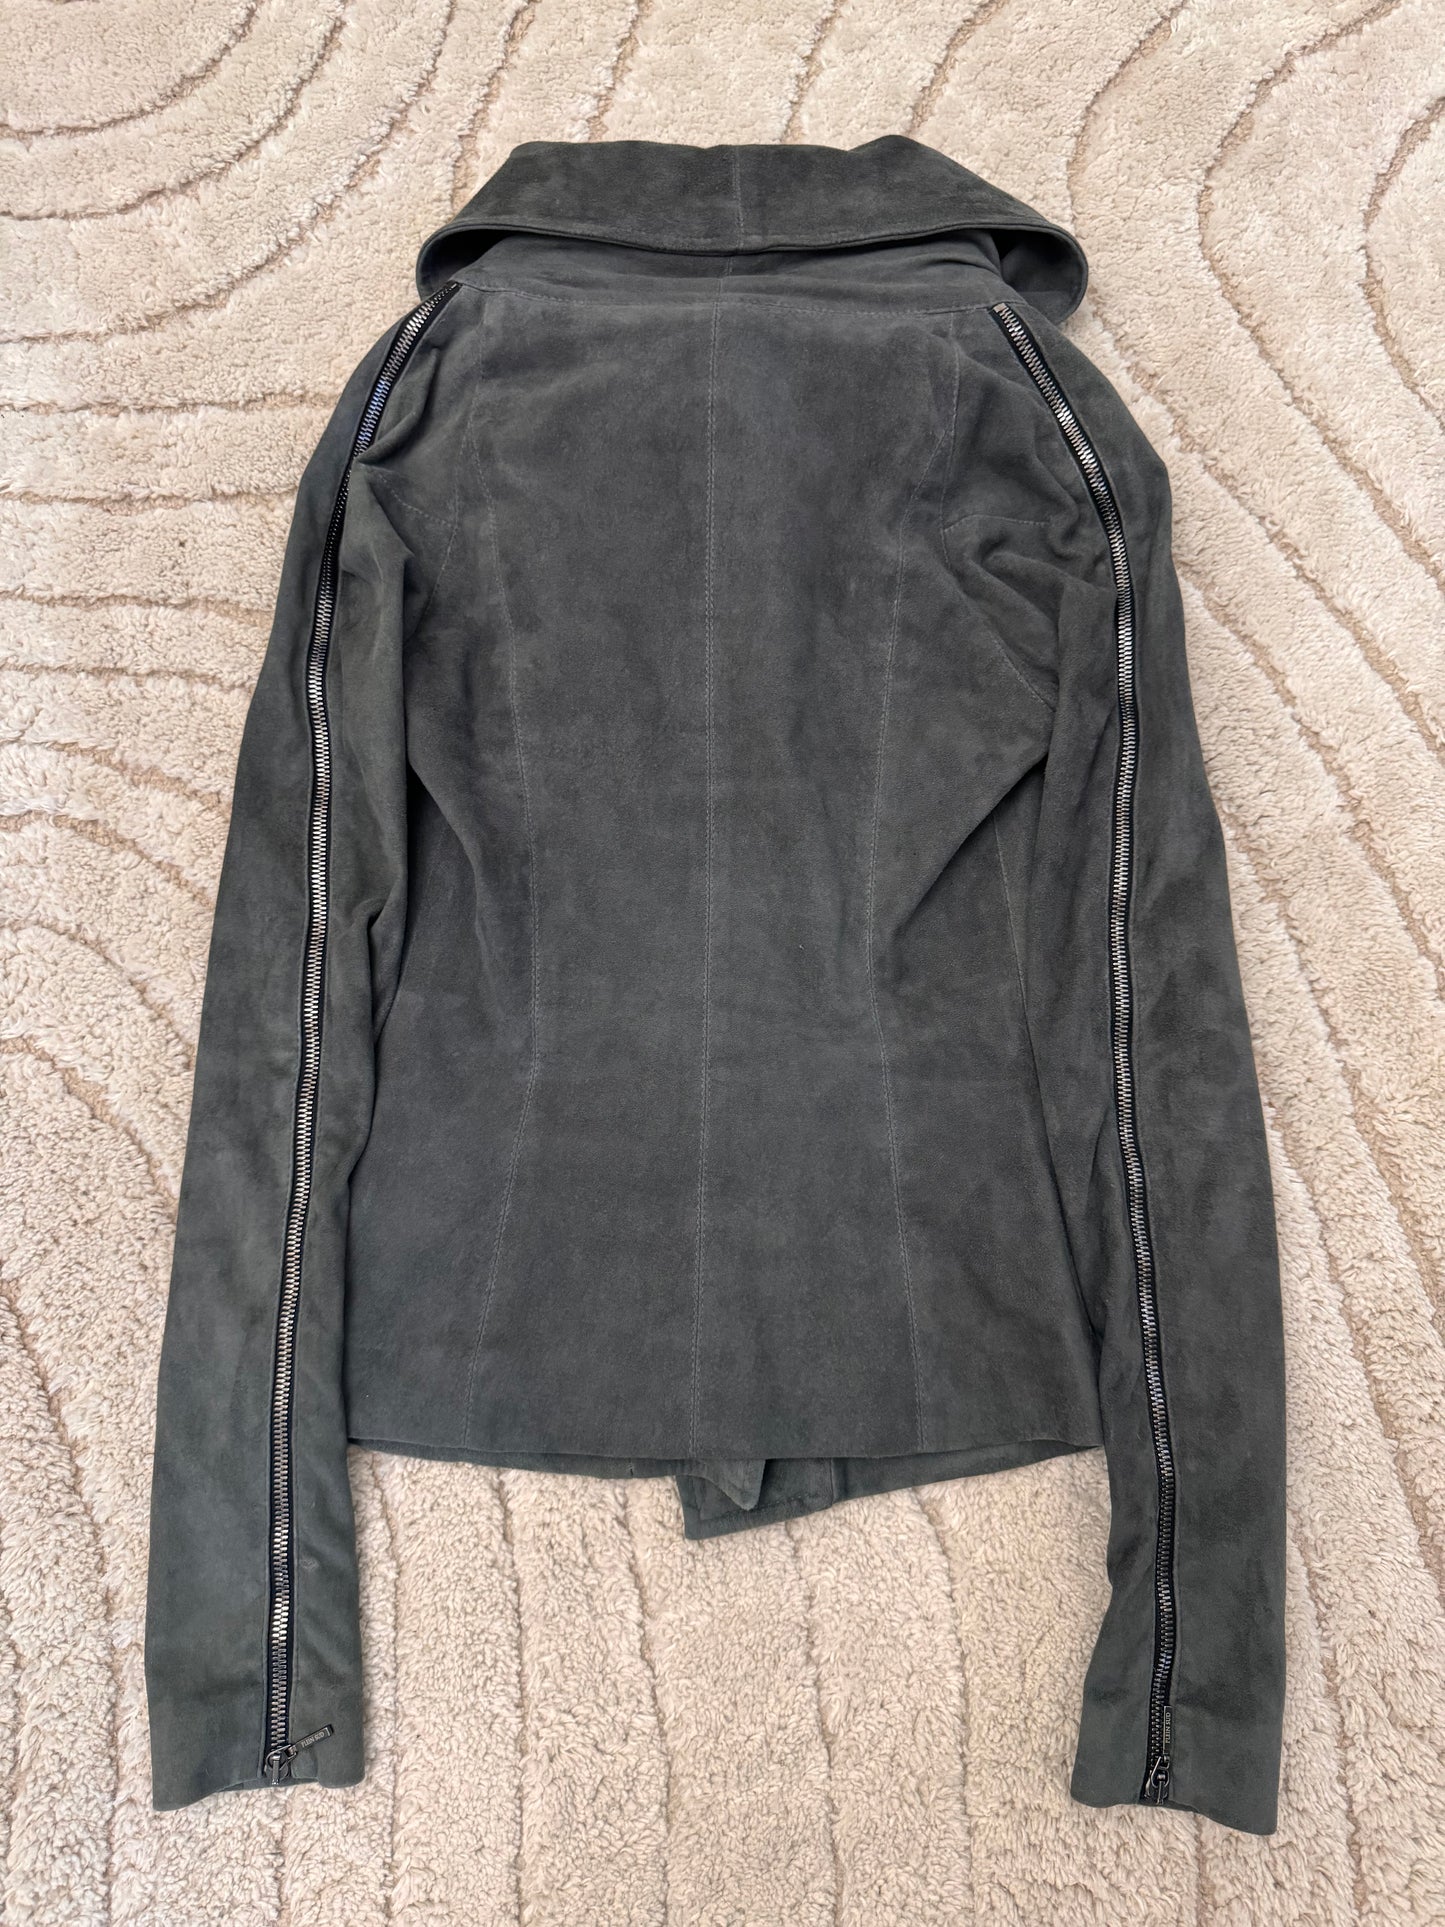 2000s Plein Sud Shadow Multi-Zip Asymmetrical Suede Jacket (XS/S)